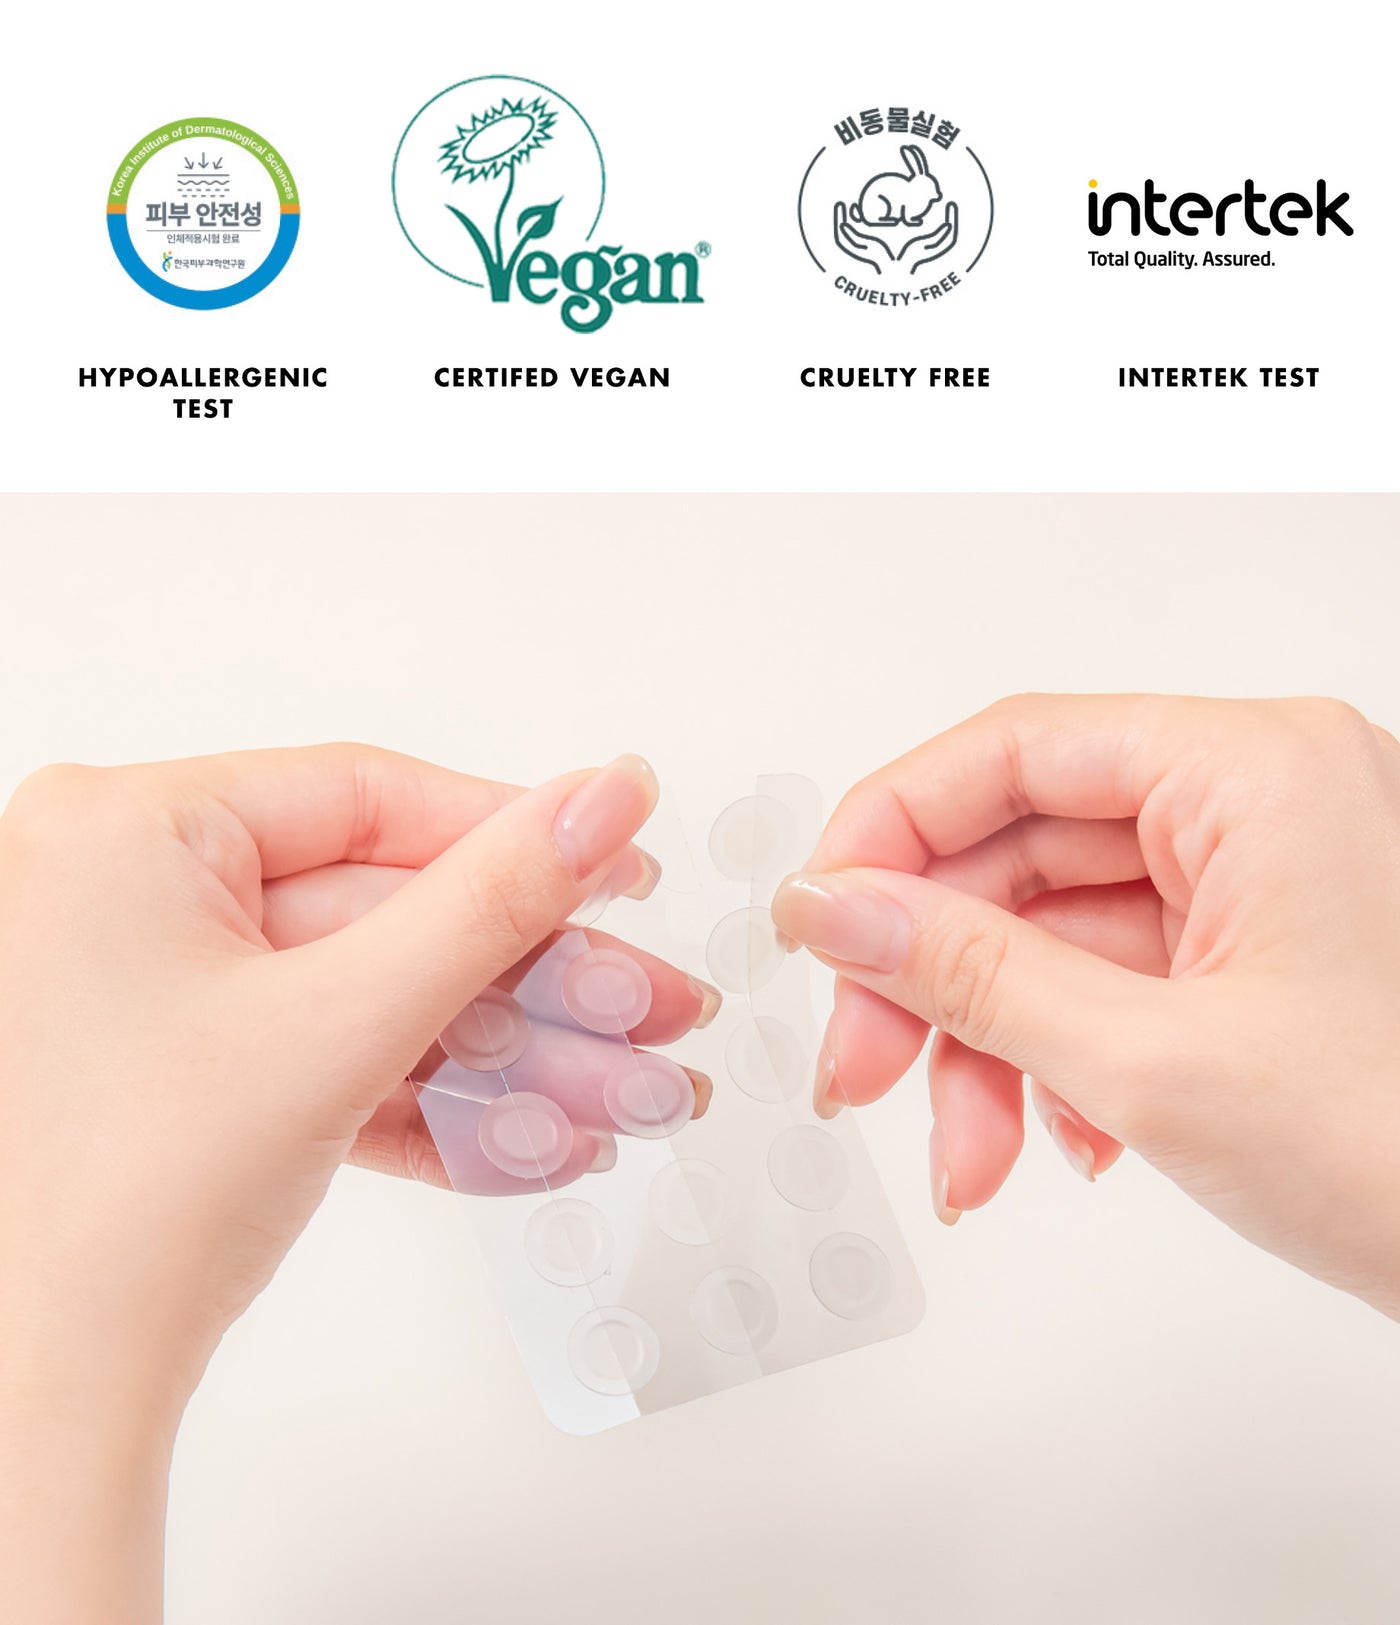 Nolahour Vegan Hydrocolloid Clear Patch